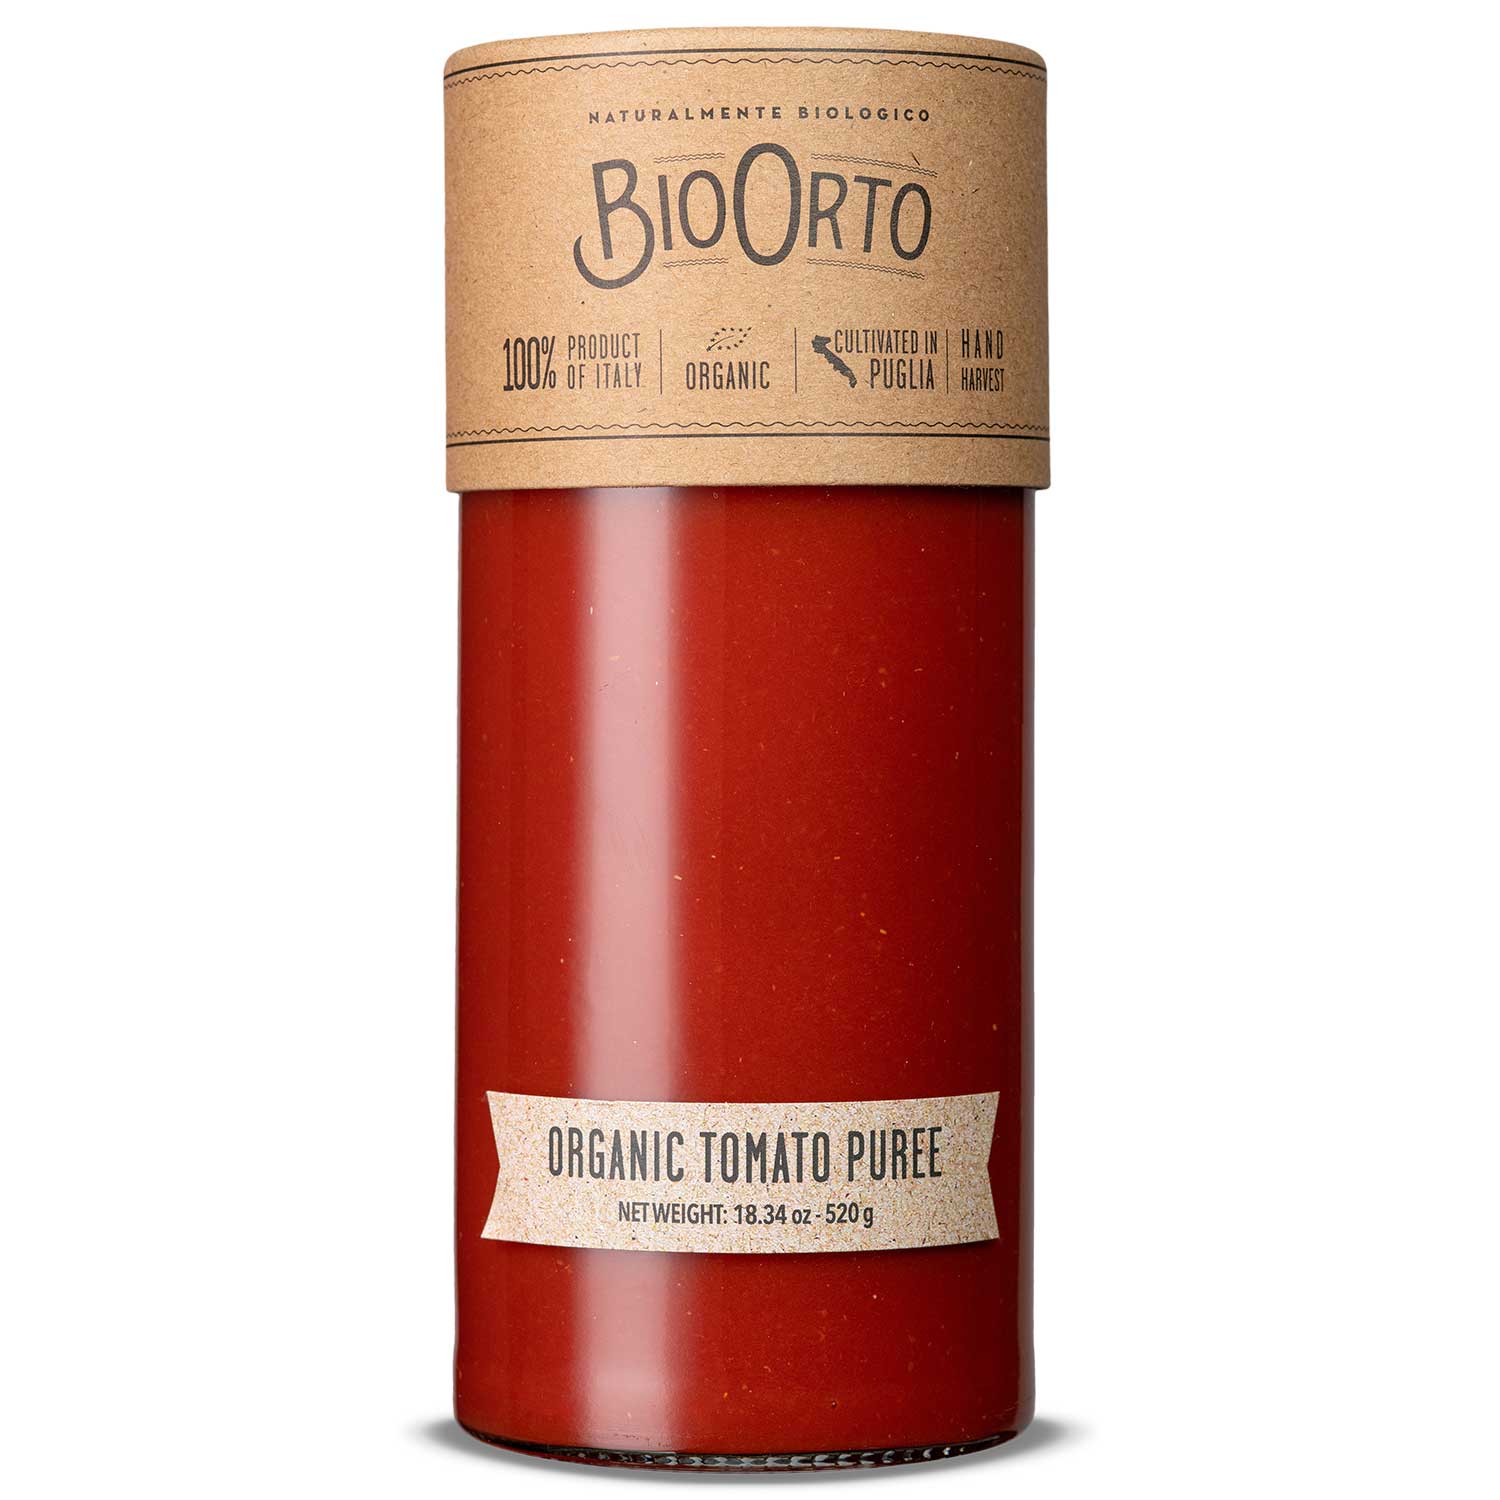 BIO ORTO ORGANIC TOMATO PUREE 580 ML - Pantry, Sauces & Condiments, Tomato - Buon'Italia